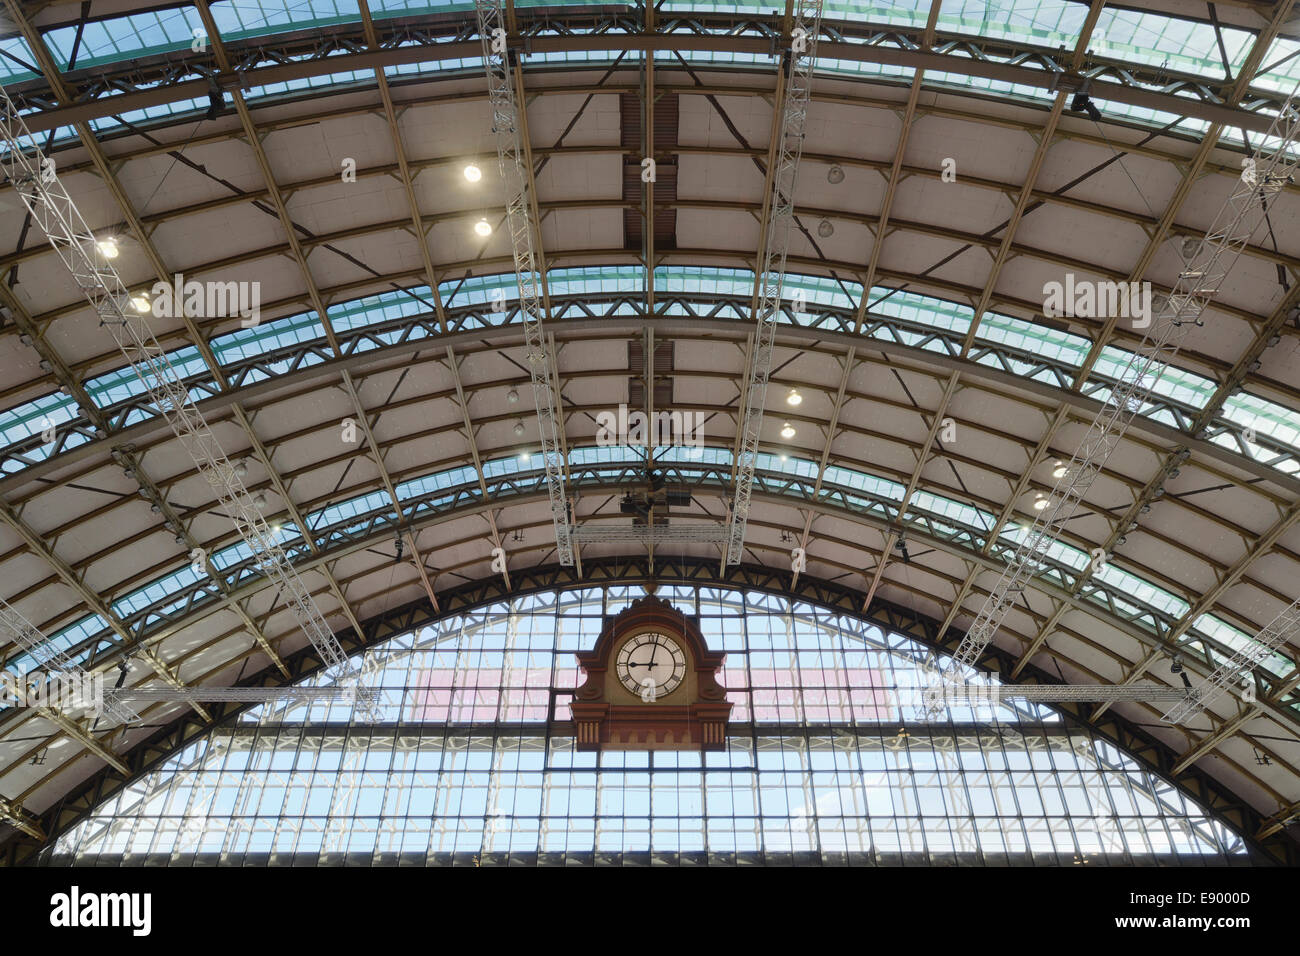 Eine interne Aufnahme von das Dach und die Uhr von der Manchester Central Convention, Messe und Konferenz-Zentrum (früher G-MEX). Stockfoto